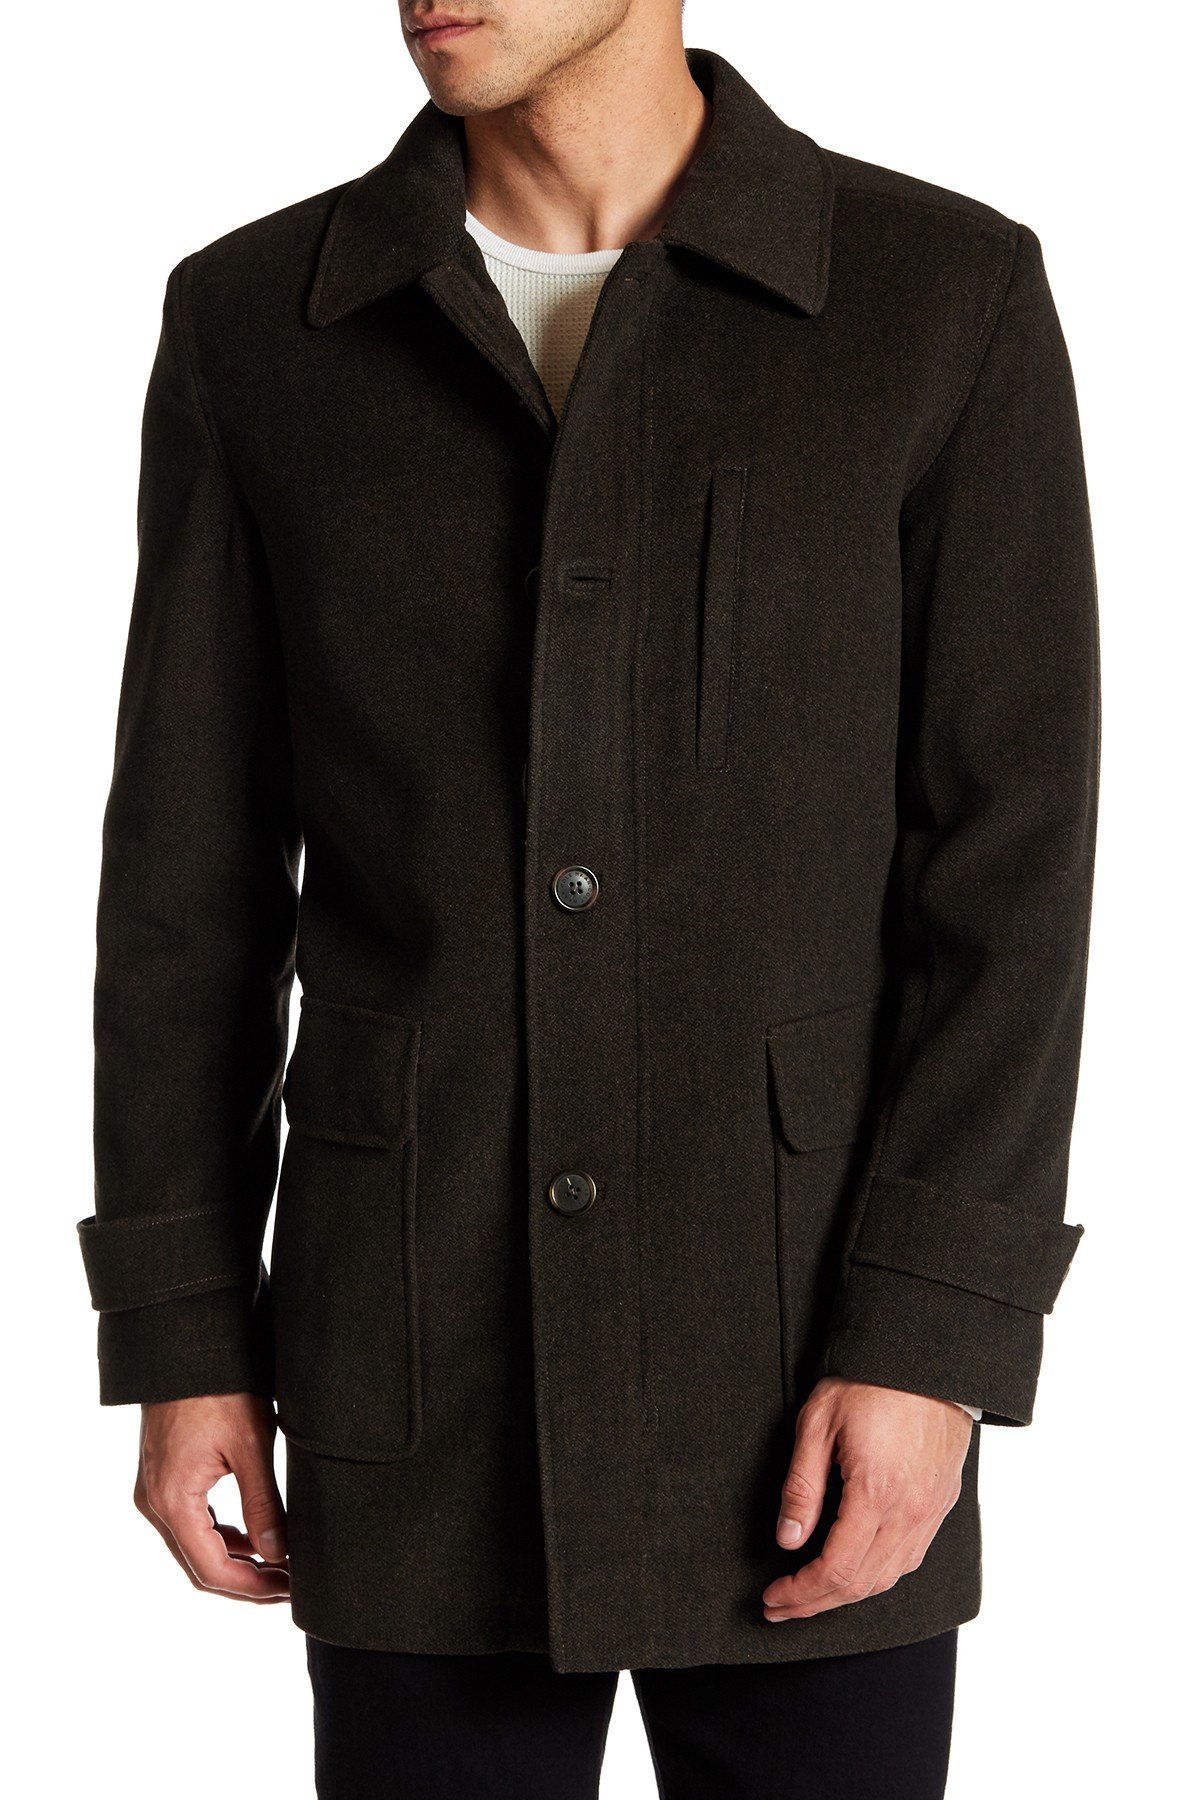 coats for men cole haan - topper coat ZCSXGOB